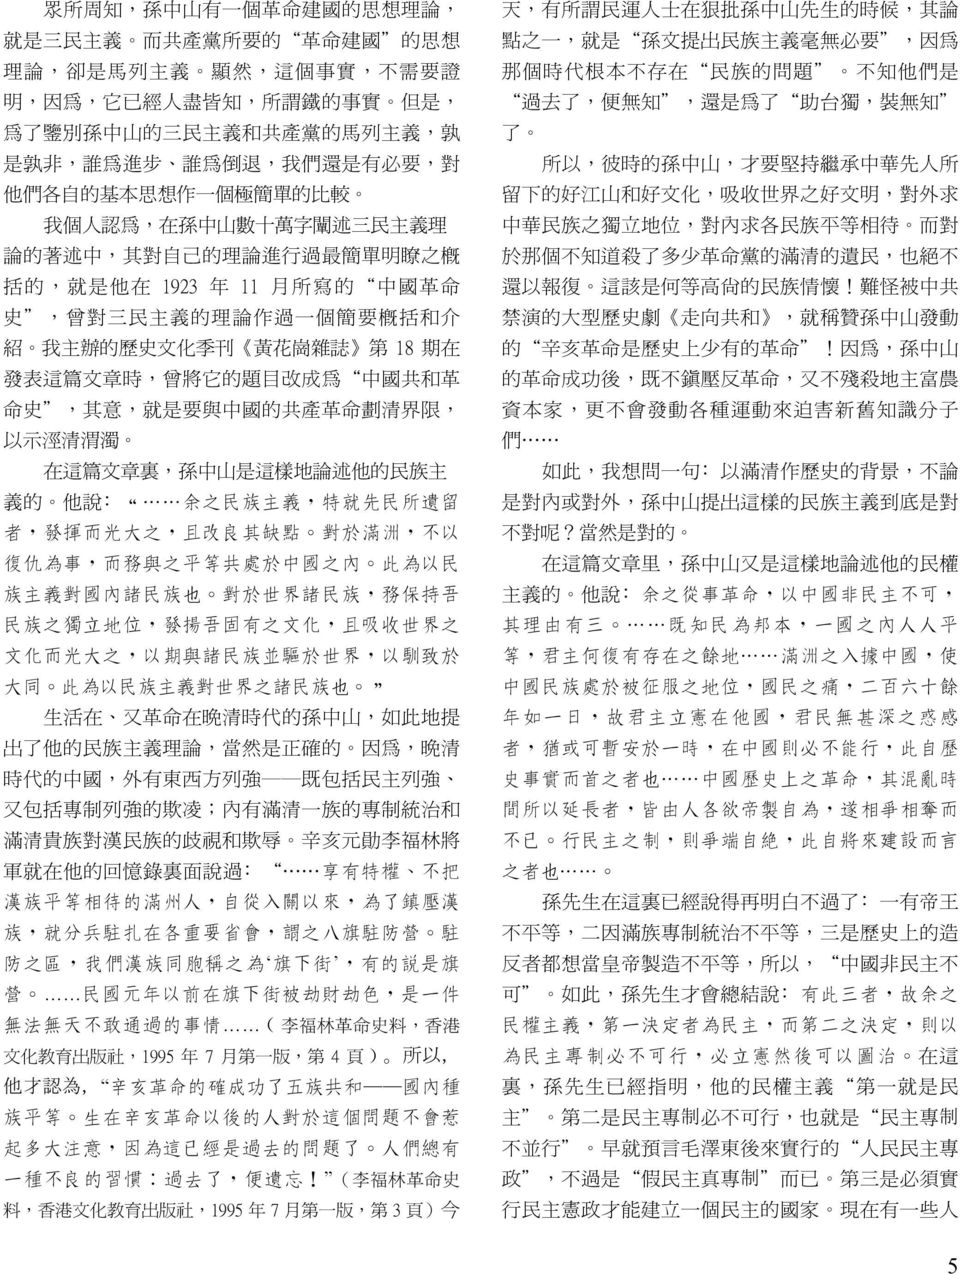 中 國 革 命 史, 曾 對 三 民 主 義 的 理 論 作 過 一 個 簡 要 概 括 和 介 紹 我 主 辦 的 歷 史 文 化 季 刊 黃 花 崗 雜 誌 第 18 期 在 發 表 這 篇 文 章 時, 曾 將 它 的 題 目 改 成 為 中 國 共 和 革 命 史, 其 意, 就 是 要 與 中 國 的 共 產 革 命 劃 清 界 限, 以 示 涇 清 渭 濁 在 這 篇 文 章 裏,